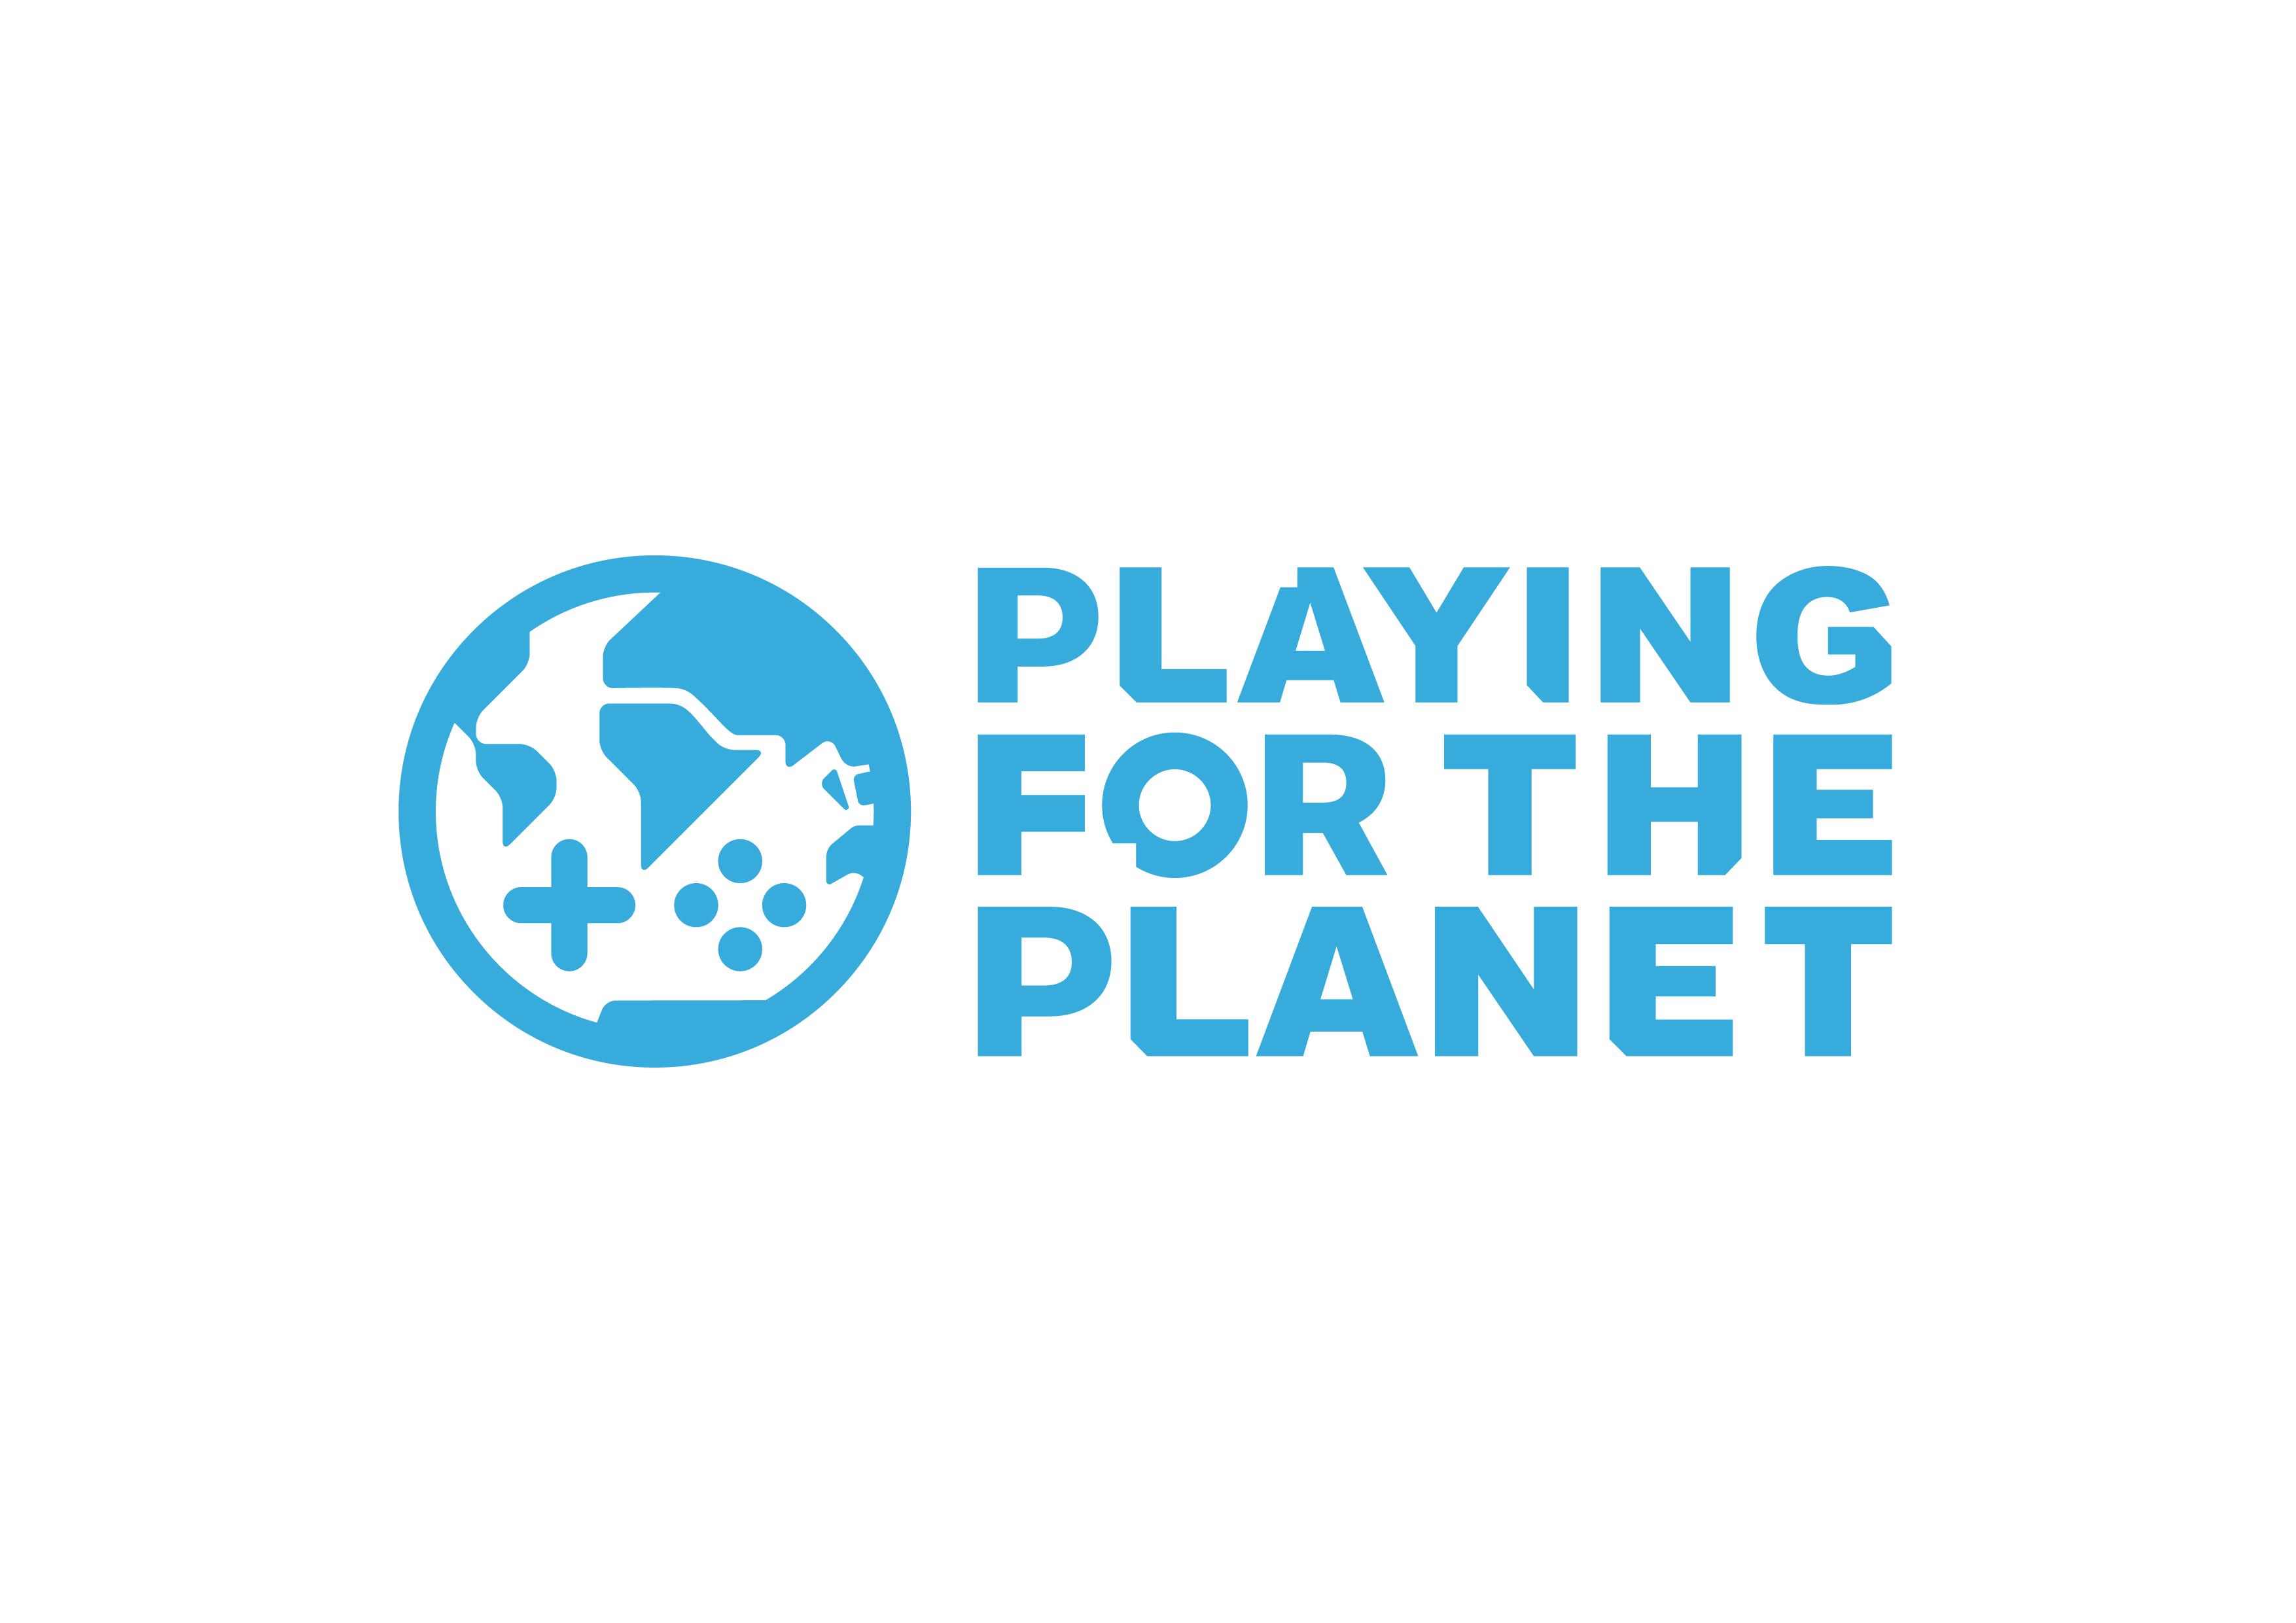 三七互娱加入玩游戏救地球联盟，积极参与全球气候行动